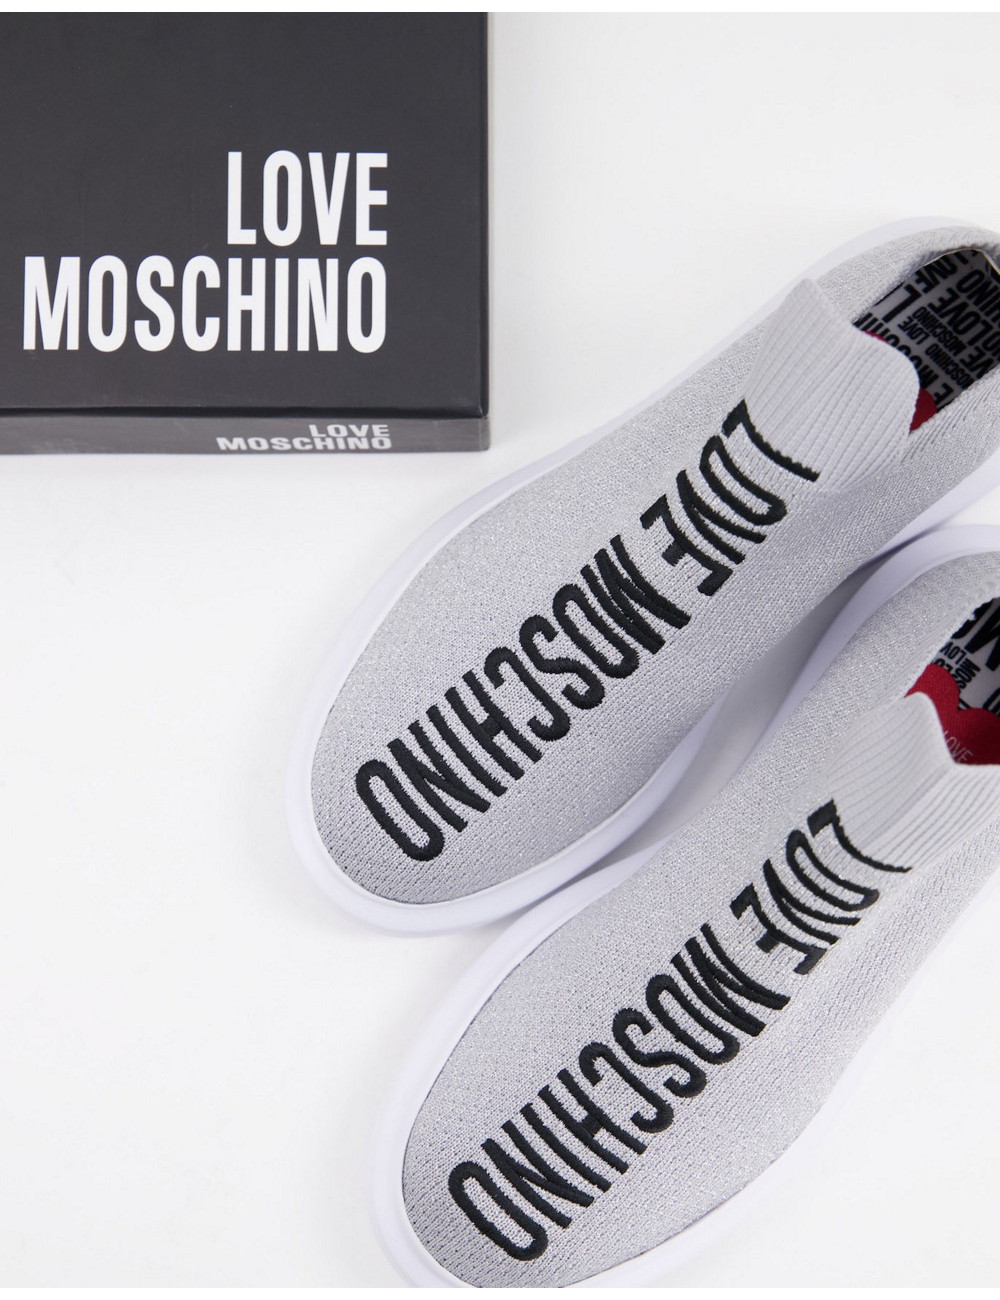 Love Moschino fabric...